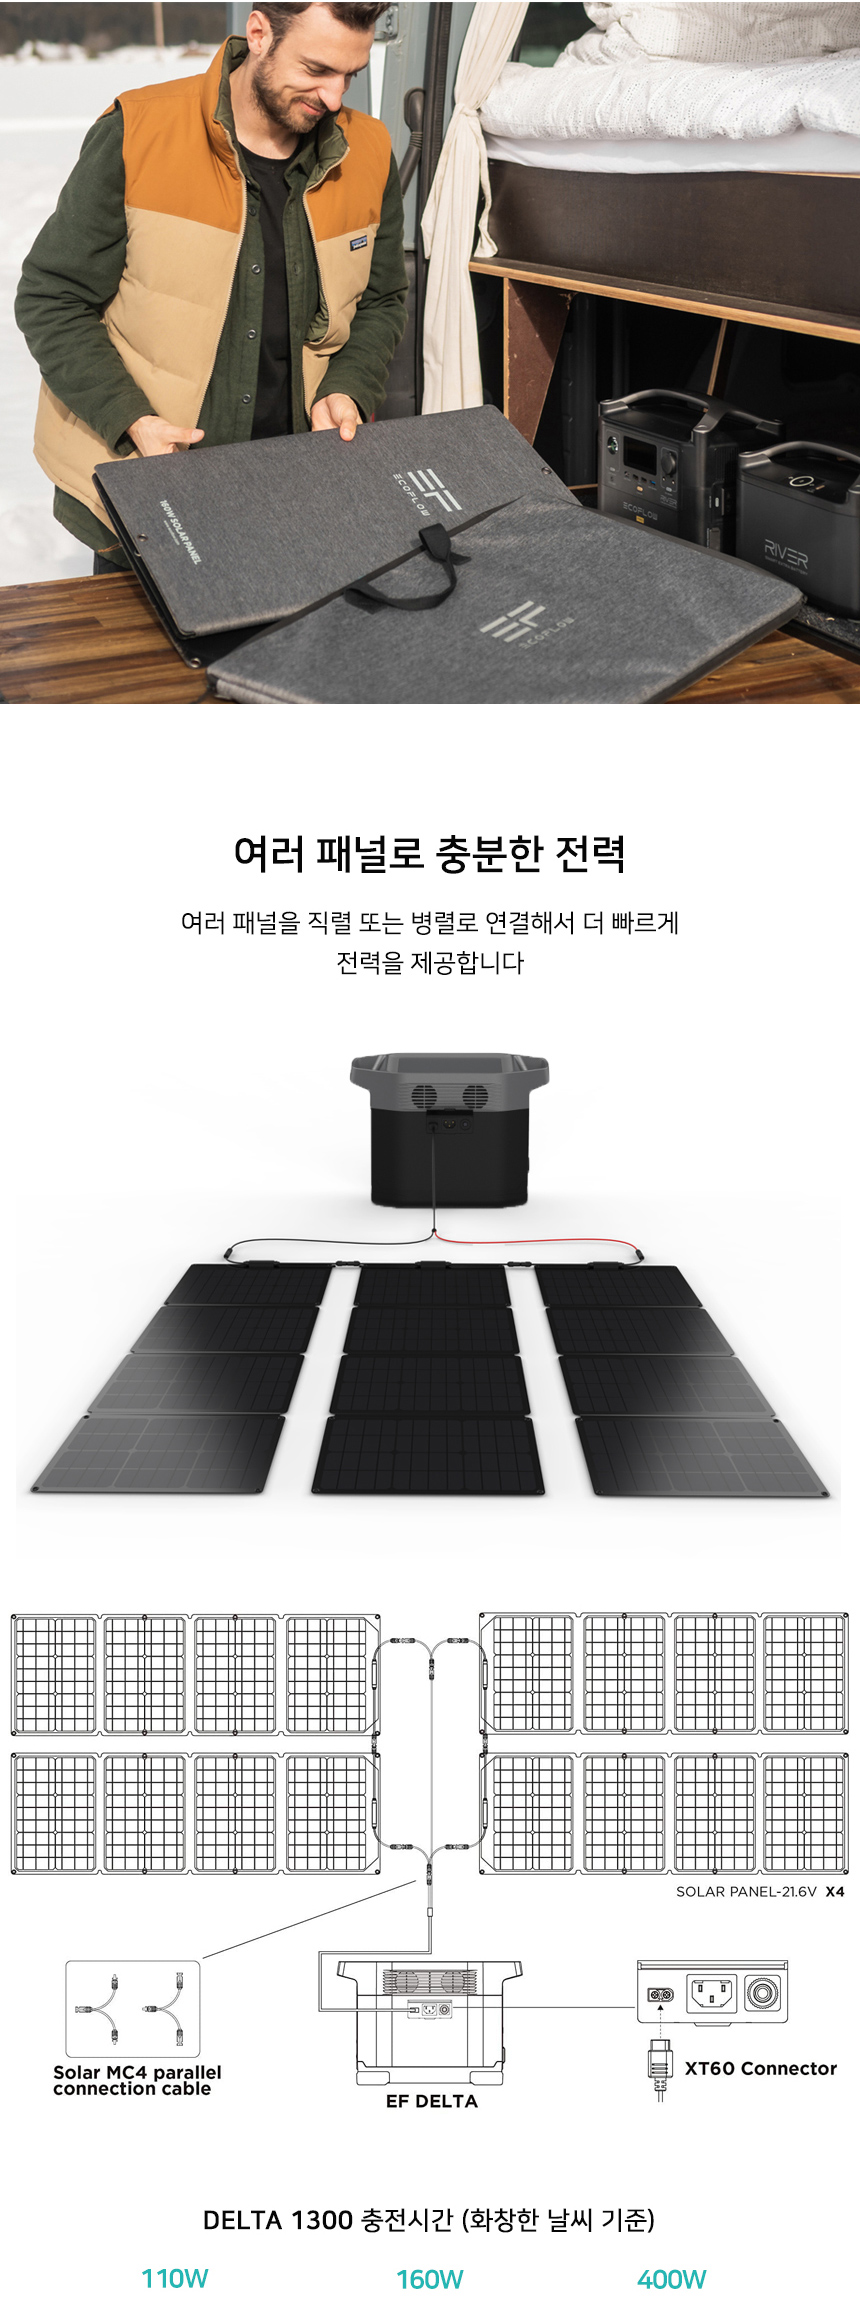 Solar_Panel_ALL_04.jpg